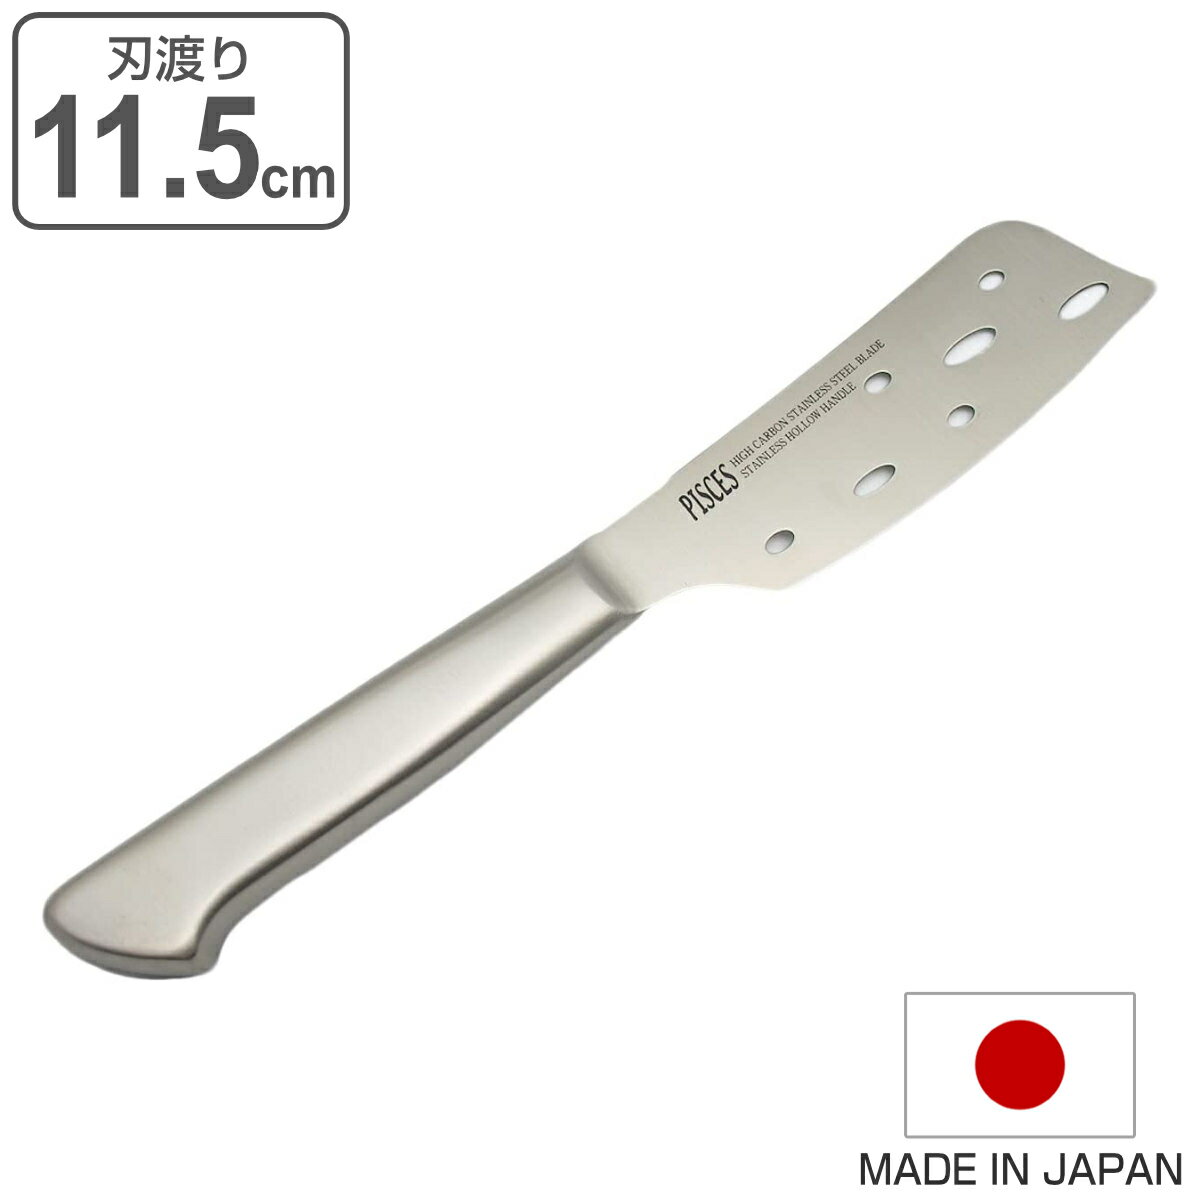 サイズ刃渡り：約 11.5（cm）内容量1丁材質刃：モリブデン含有ステンレス鋼柄：ステンレススチール生産国日本製区分返品・キャンセル区分（小型商品）ギフトラッピングページを見るチーズナイフ 11.5cm PISCES オールステンレス 日本製おすすめポイントチーズナイフ　刃渡り11.5cmチーズ用に作られたナイフです。刃の側面に穴が開いているため、チーズがくっつきにくく、きれいに切り分けることができます。継ぎ目の無い一体構造刀身とハンドルは継ぎ目の無い一体構造で、水も入らず腐食が極めて起こりにくく非常に衛生的です。また柄が抜けたりガタツキが起こったりすることもなく丈夫に仕上げられています。商品詳細握りやすく、ほどよい重量感のある柄見た目にもおしゃれな一体型の柄（ハンドル）ですが、ほどよい重量感と握りやすさも兼ね備えており、力を入れやすく食材を軽く切ることができます。PISCESシリーズ同じシリーズにはペティナイフや三徳包丁はもちろん、パン切り包丁、チーズナイフなどの取り扱いがあるので、用途に合わせてお選び頂いたり、シリーズで揃えるのも統一感が出てオススメです。最後まで人の手による丁寧な検品・仕上げ大切なお客様の元へ安全、安心、自信のある包丁をお届けできるよう、人の手によって手入れ、何度もの検品、最後の箱詰め作業を行っています。シリーズ紹介チーズナイフペティナイフ小三徳包丁菜切包丁三徳包丁AOD三徳包丁関連キーワード：パイシーズ ステンレス 一体型 衛生的 丈夫 耐久性 人気 キッチン用品 キッチン雑貨 キッチン小物 調理用品 台所用品 オススメ 便利 役立つ ギフト 贈り物 刃物 よく切れる モリブデン おしゃれ お洒落 スタイリッシュ くっつきにくい きれいに切れる LH309よく一緒に購入されている商品ペティナイフ 13.5cm PISCES オー2,230円刺身包丁 20cm PISCES オールステン3,050円関連商品はこちらチーズナイフ モクハウス 日本製 チーズおろし2,040円ナイフ チーズ用 チーズナイフ チーズロワイヤ978円バターナイフ 刃渡り10cm MAC マック 3,340円冷凍包丁 20cm PISCES オールステン2,850円パン切り包丁 20cm 凹刃 PISCES オ2,950円チーズナイフ OTOTO Bert 2,430円三徳包丁 17cm PISCES オールステン2,540円穴明包丁 18cm PISCES オールステン3,160円ペティナイフ 11.5cm mere pere2,740円三徳包丁 16.5cm オールステンレス オー2,440円パン切り包丁 ファブールライフ ステンレス製 980円牛刀包丁 18cm PISCES オールステン2,950円